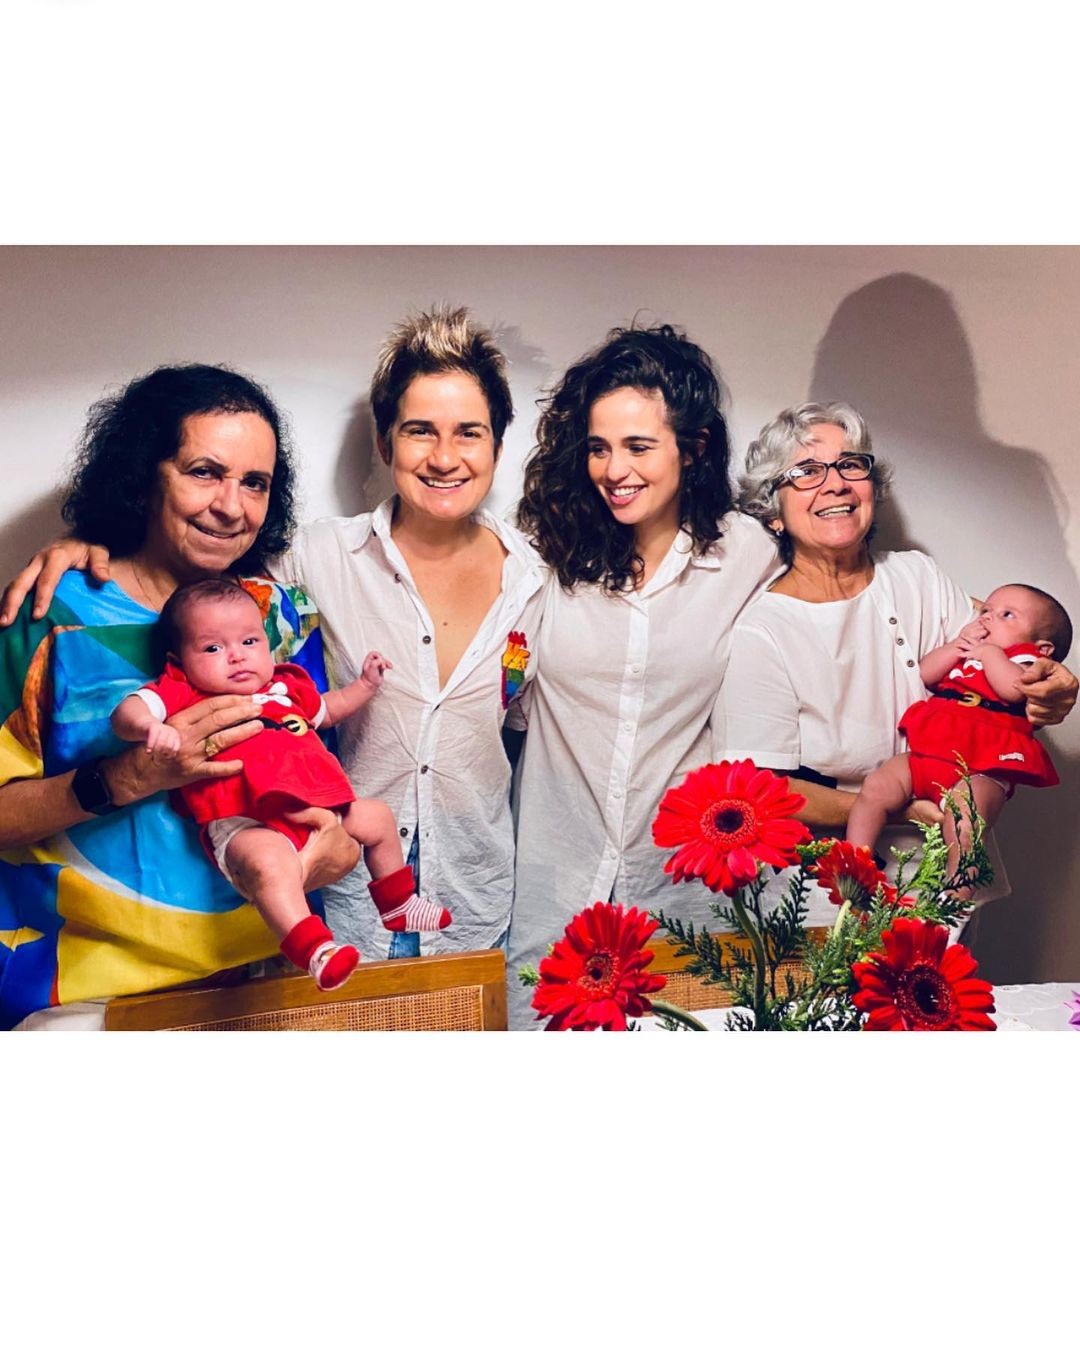 Nanda Costa publica clique natalino com Lan Lanh e as filhas gêmeas (Foto: Reprodução / Instagram)